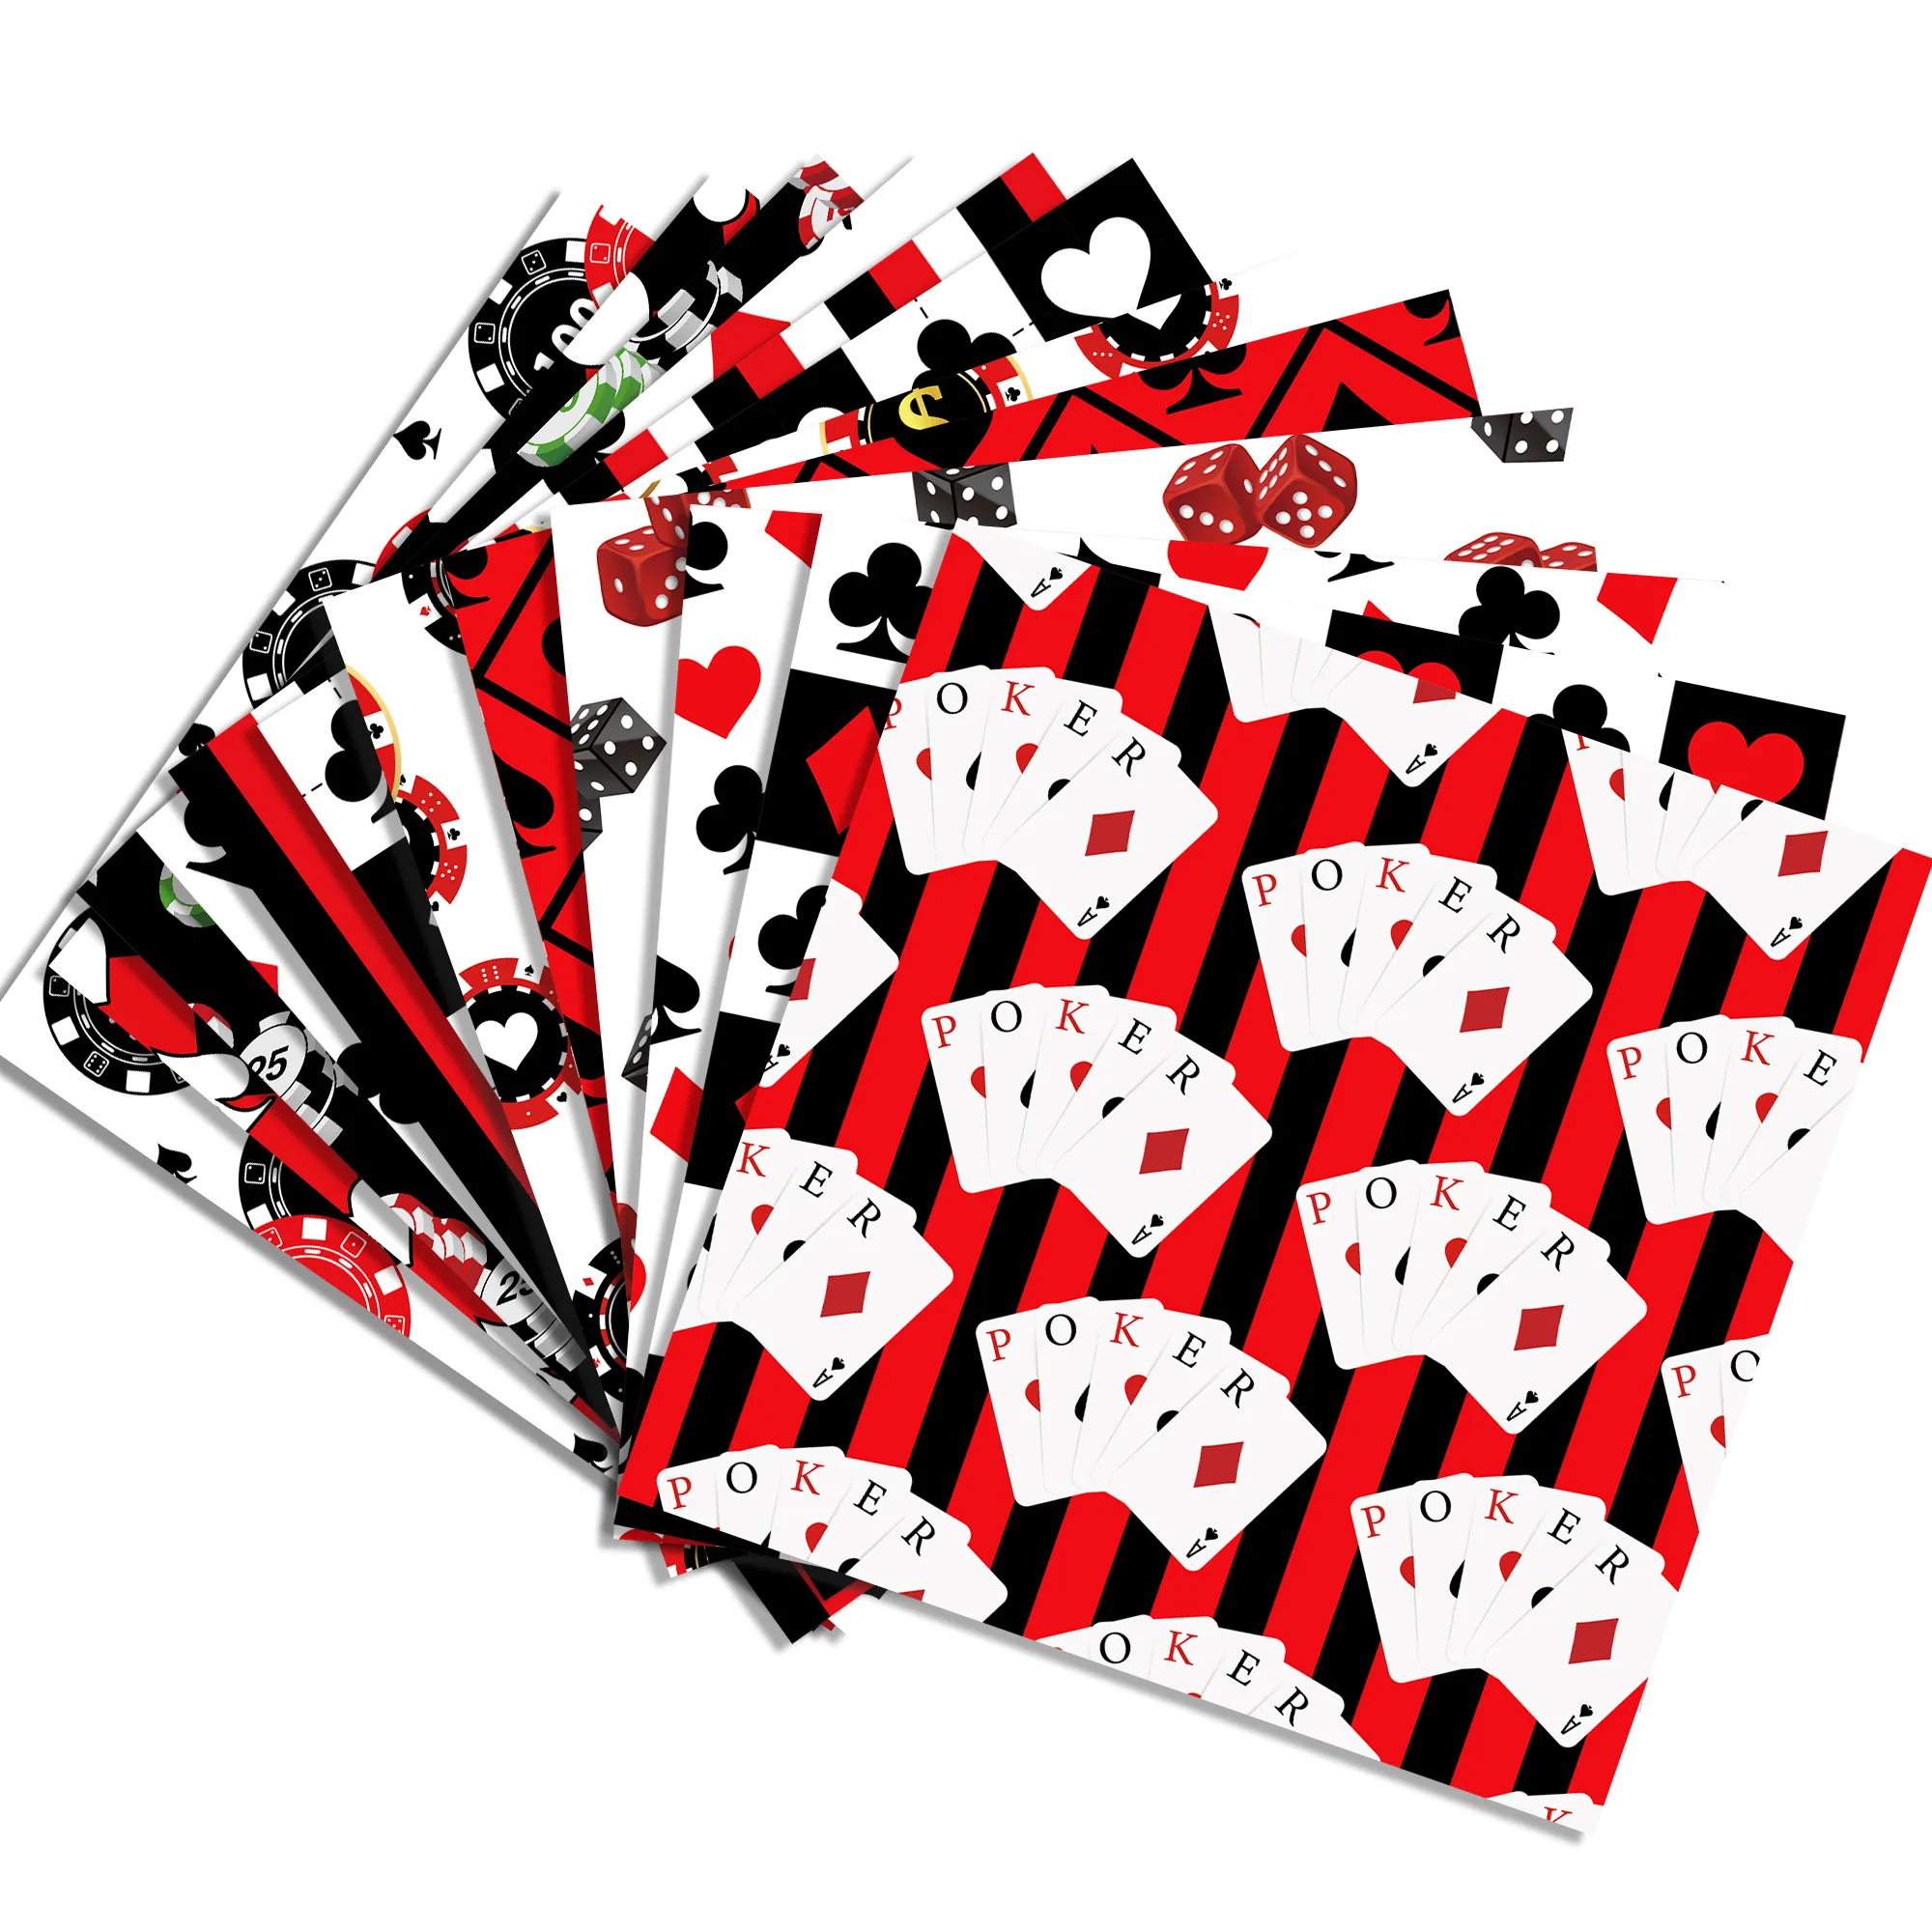 WW053 Casino Poker desen çift taraflı hediye sarma DIY koleksiyon defteri kağıdı çocuklar doğum günü partisi malzemeleri için